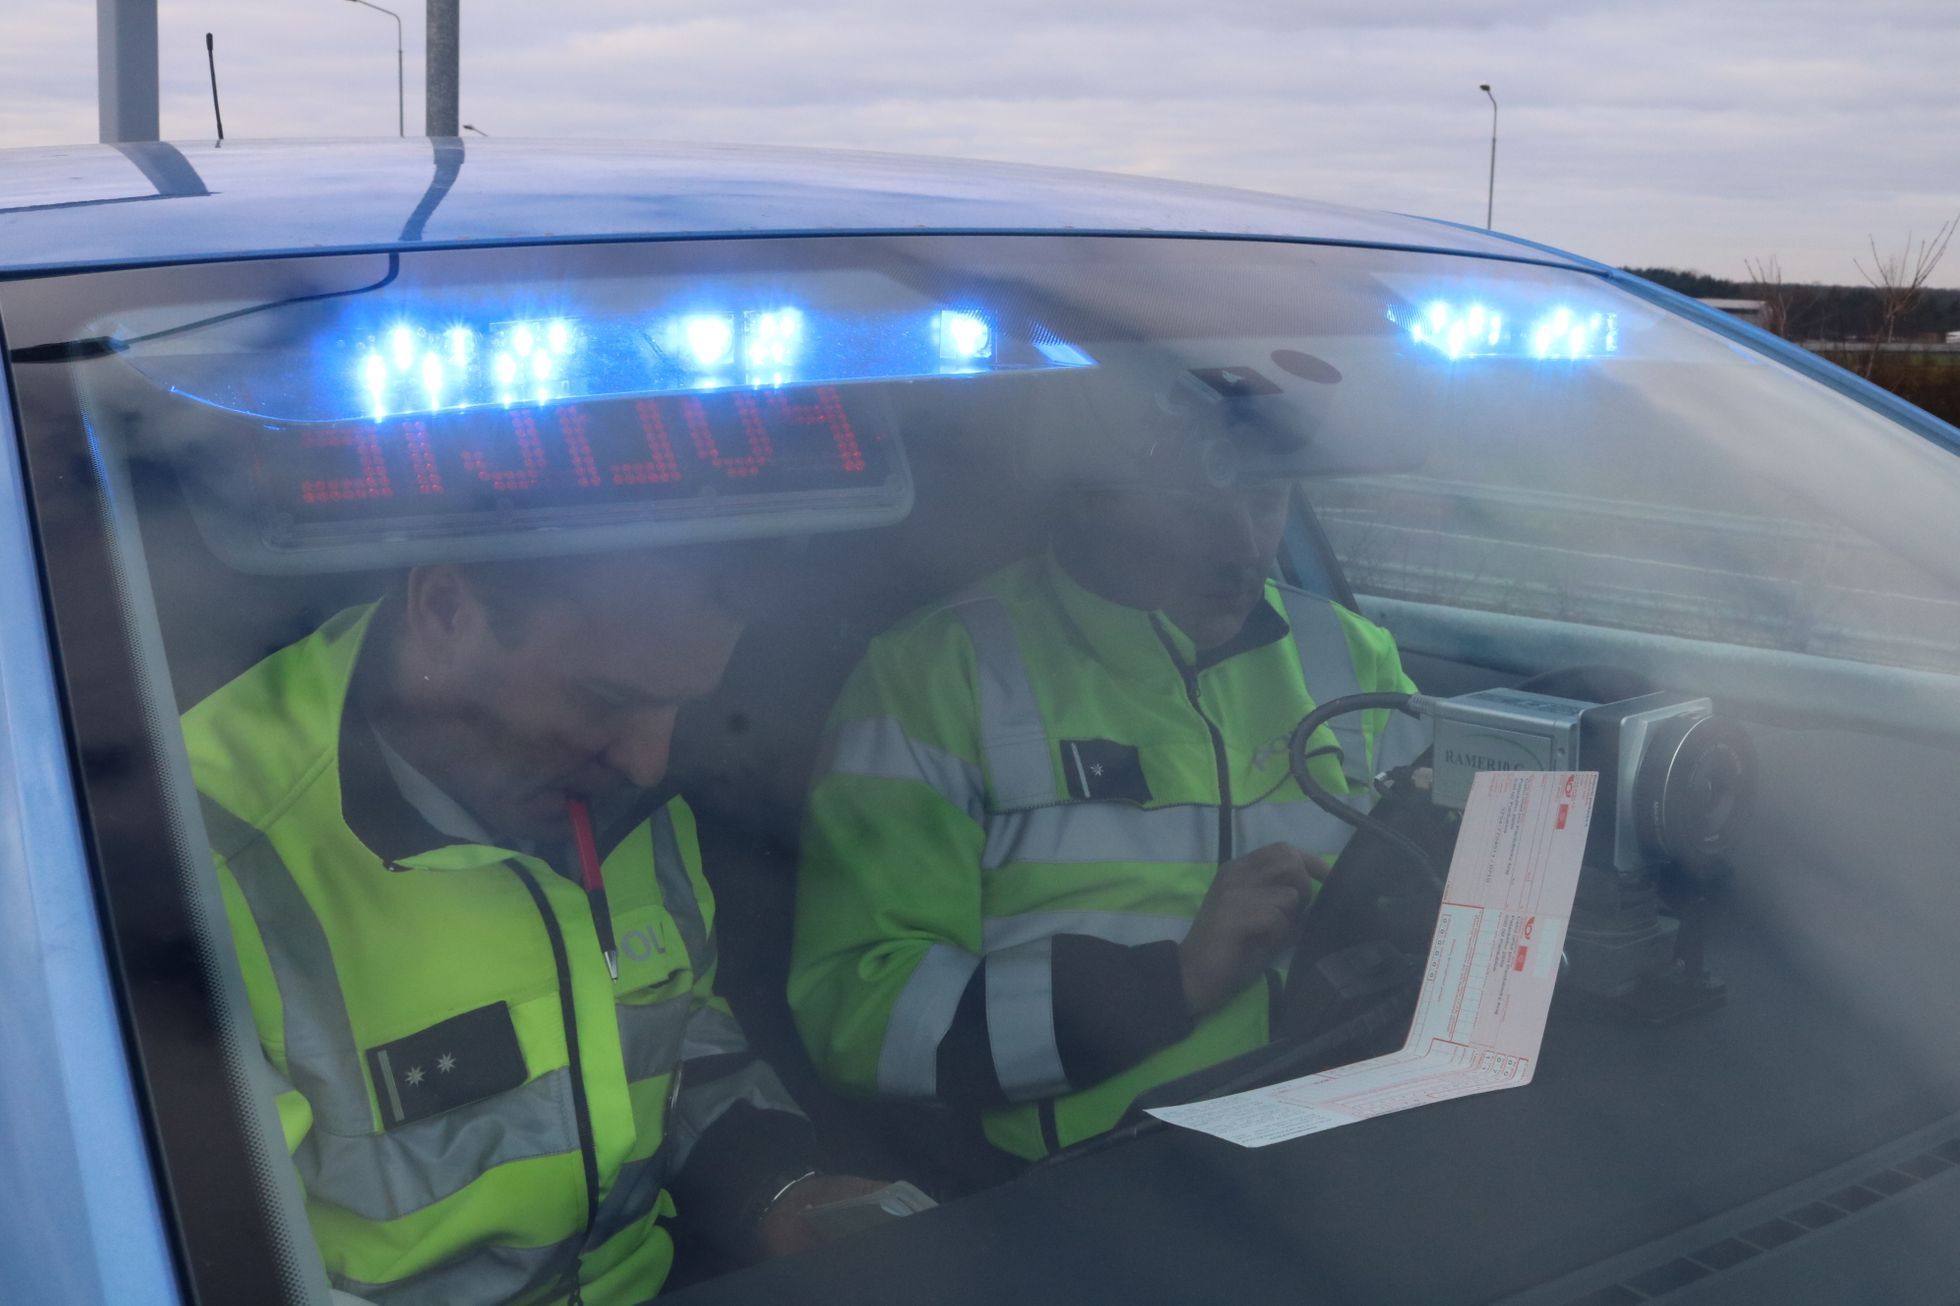 Policejní octavie v akci - prověření řidiče a vozidla